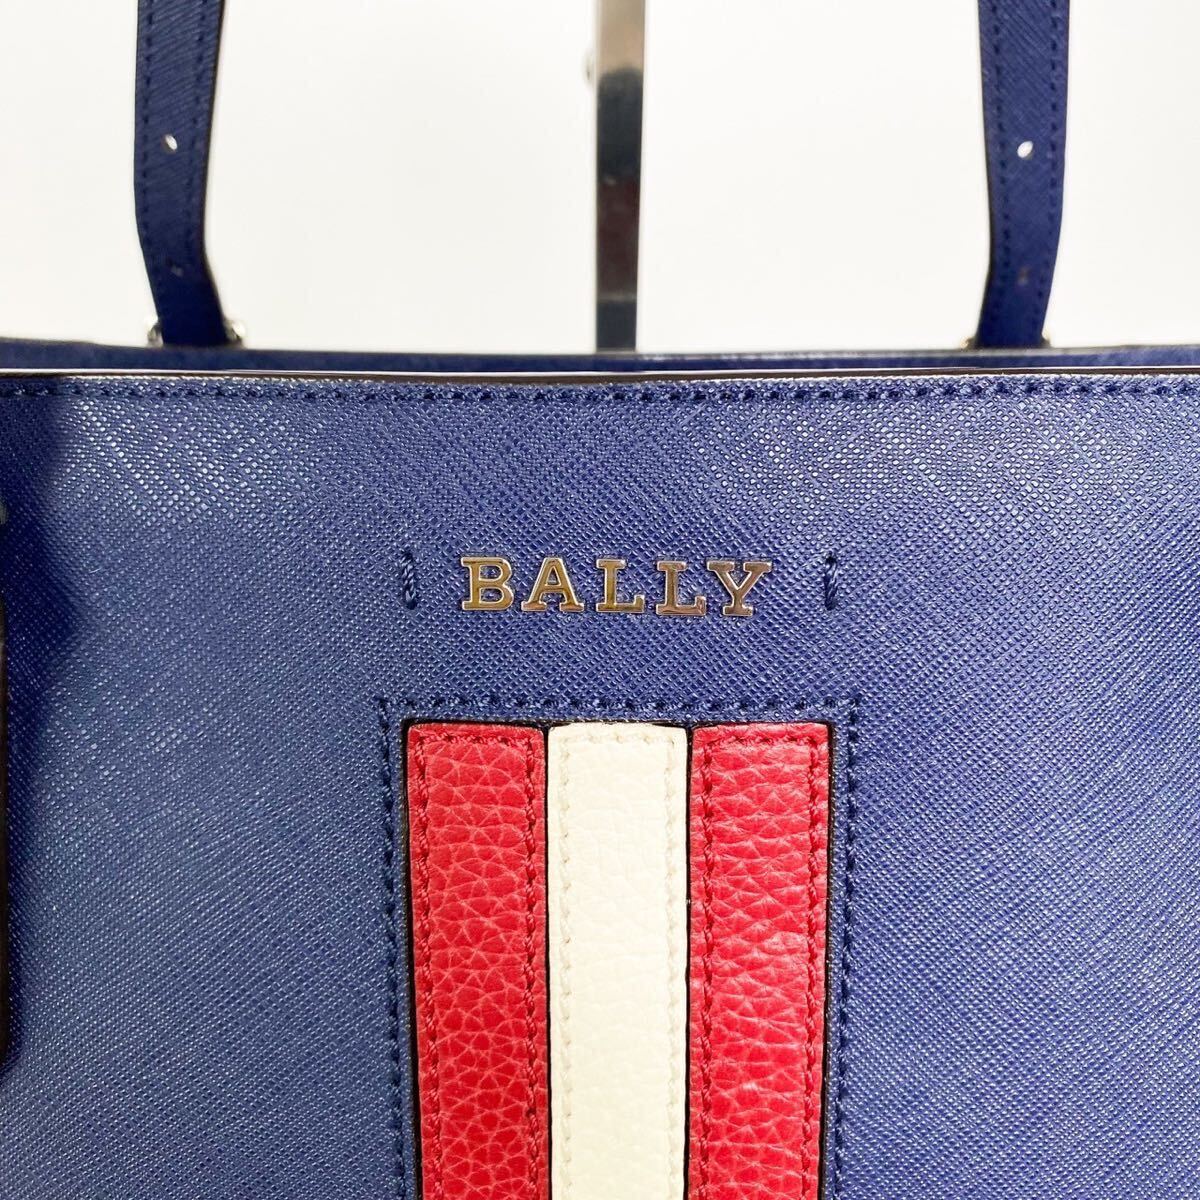  не использовался класс / действующий дизайн * BALLY Bally большая сумка портфель Supra tore spo плечо ..A4safia-no кожа темно-синий мужской 